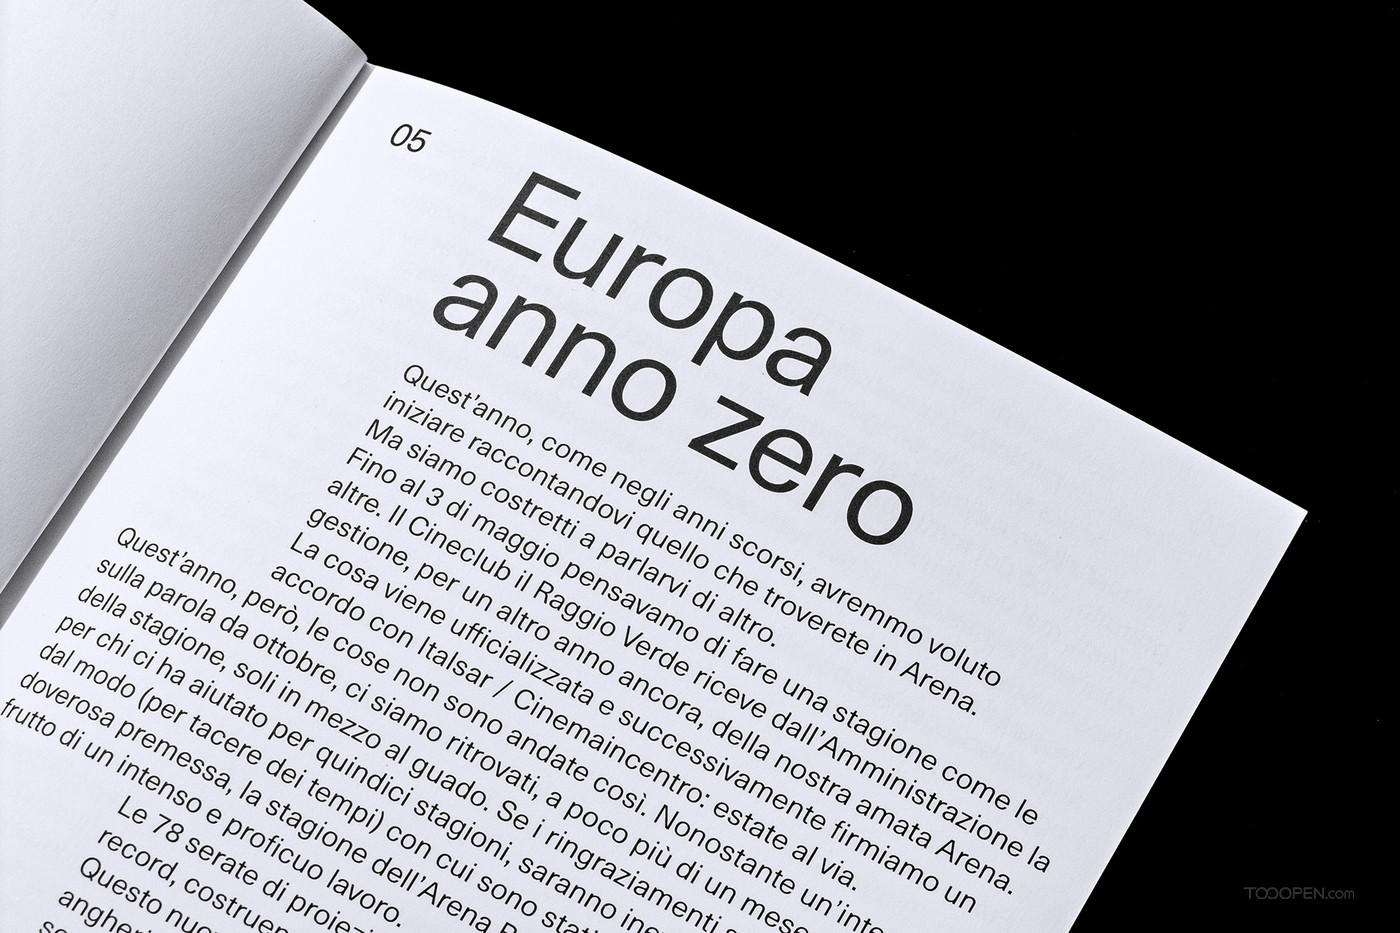  Europa anno zero欧罗巴纪元画册设计欣赏-04